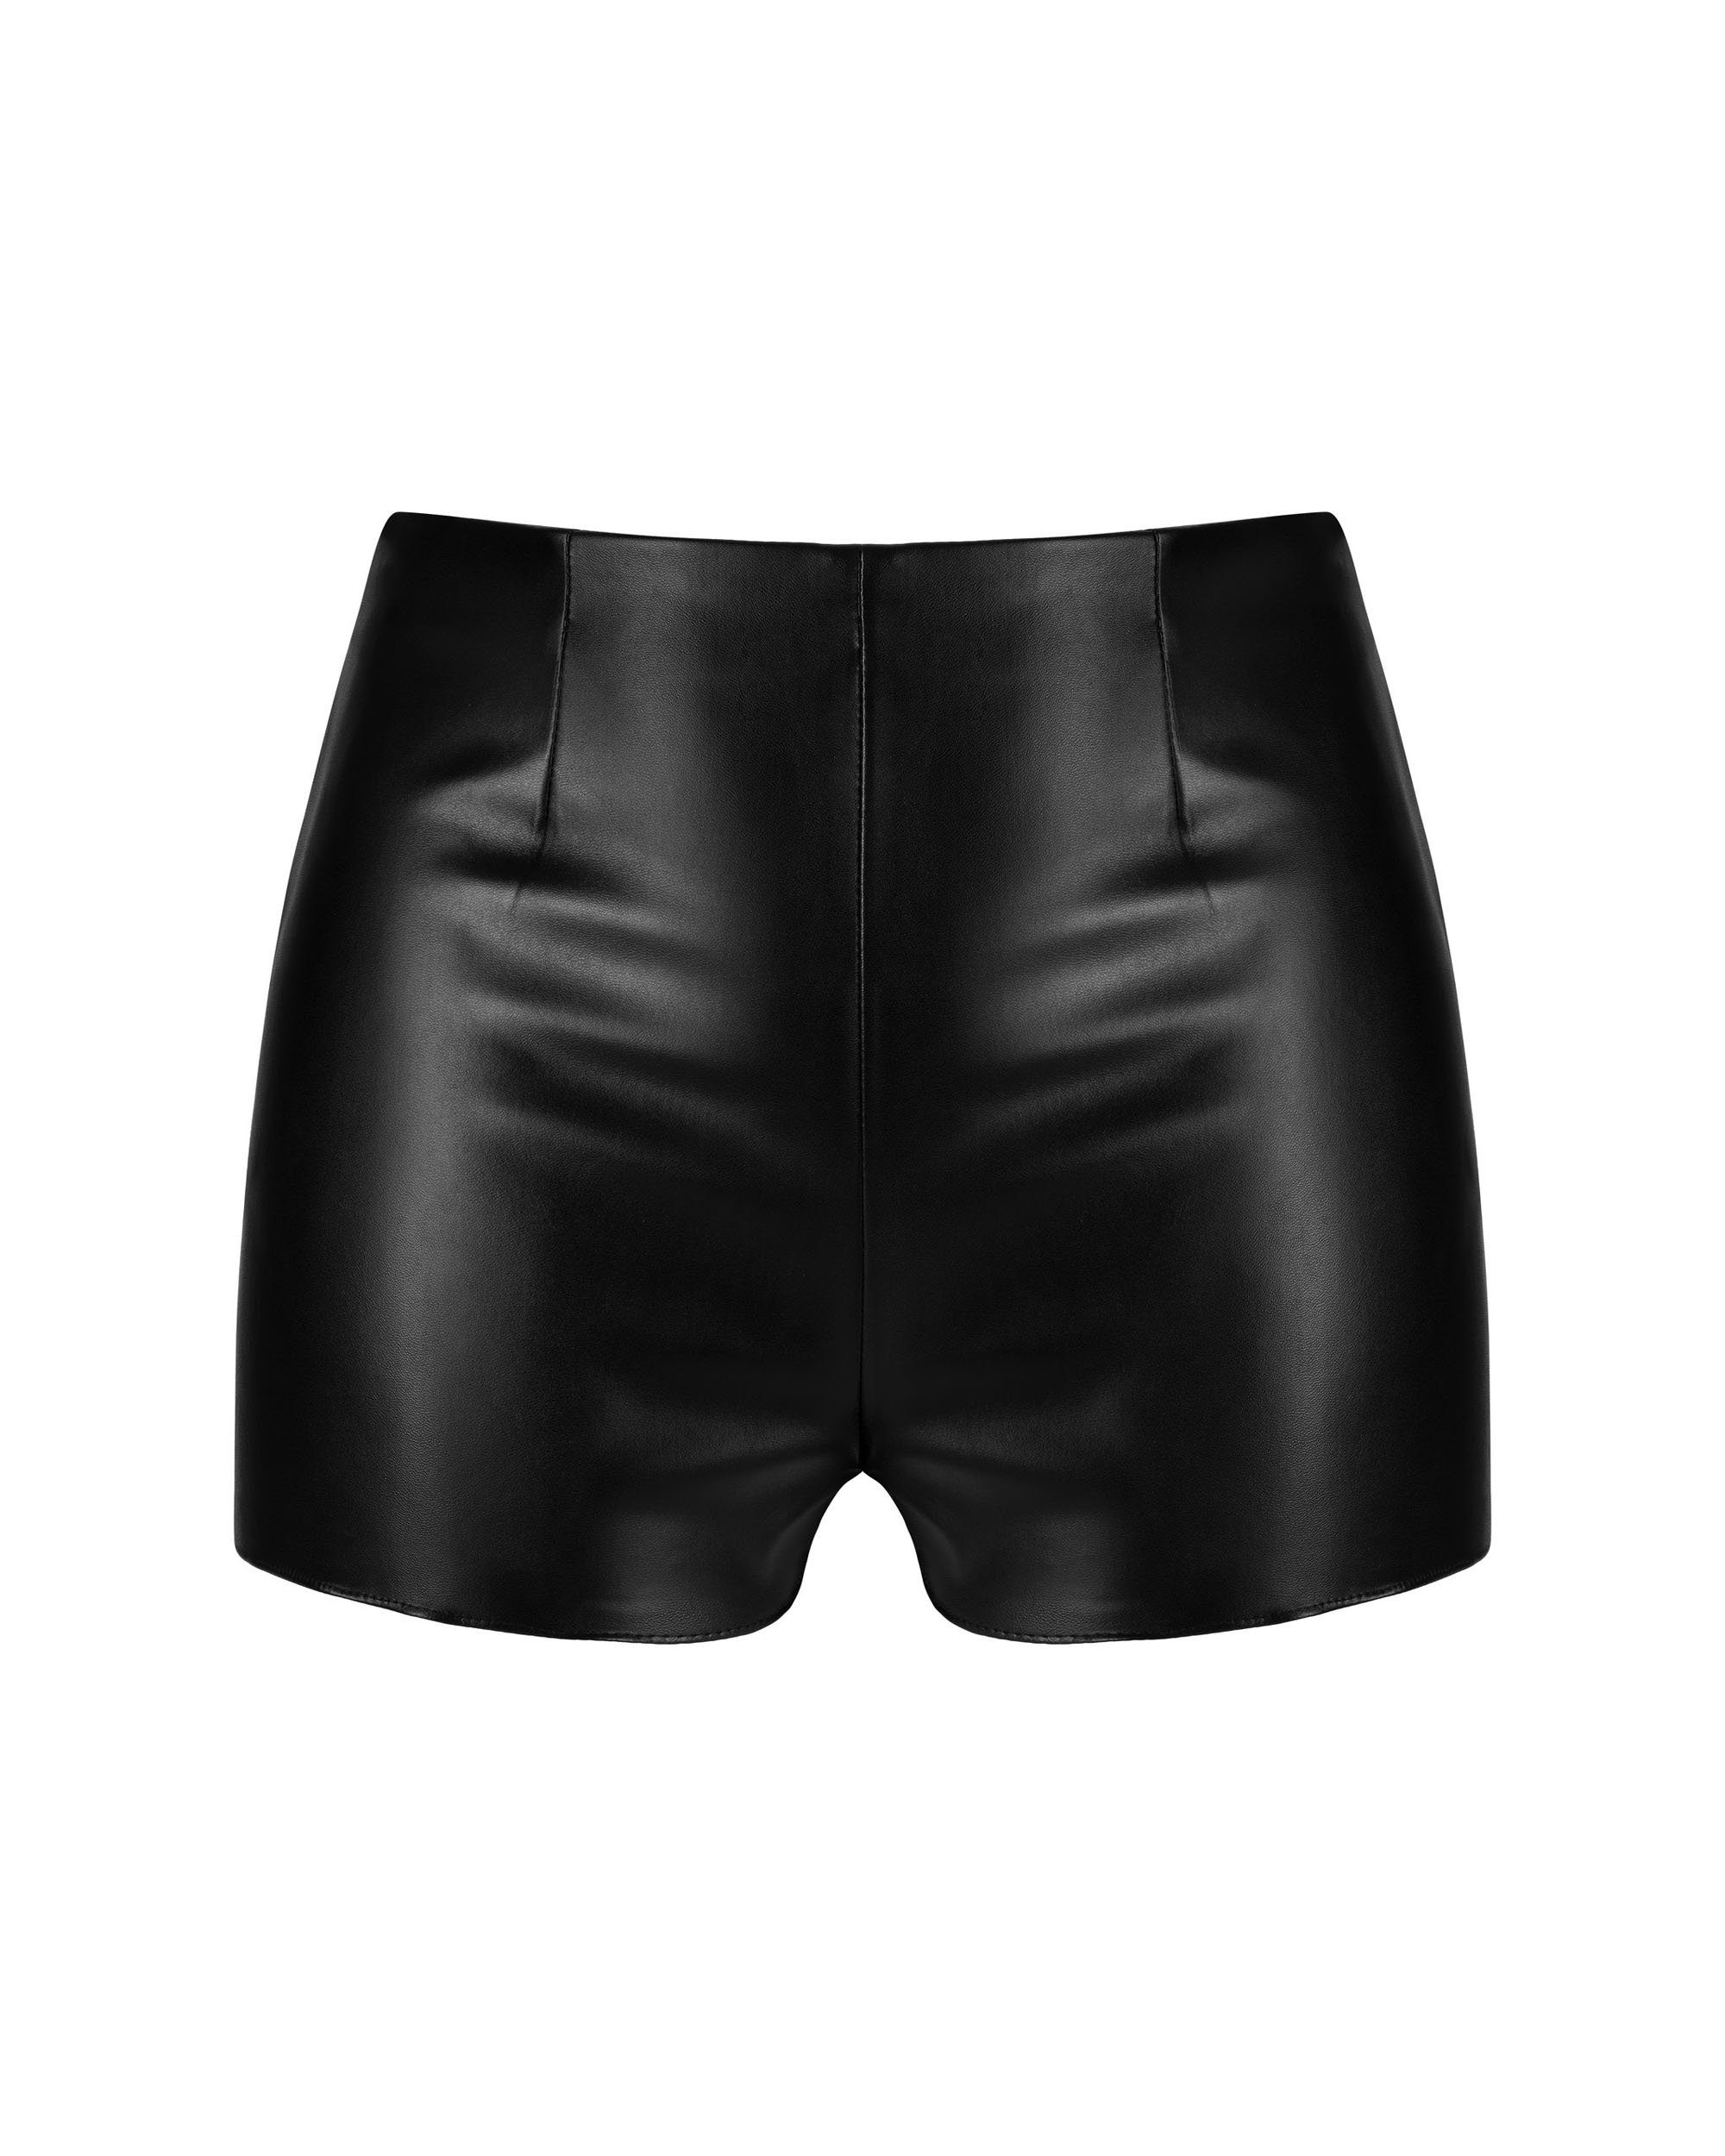 Panty 1-St) Obsessive Wetlook schwarz Kunstleder Hotpants elastisch (einzel,